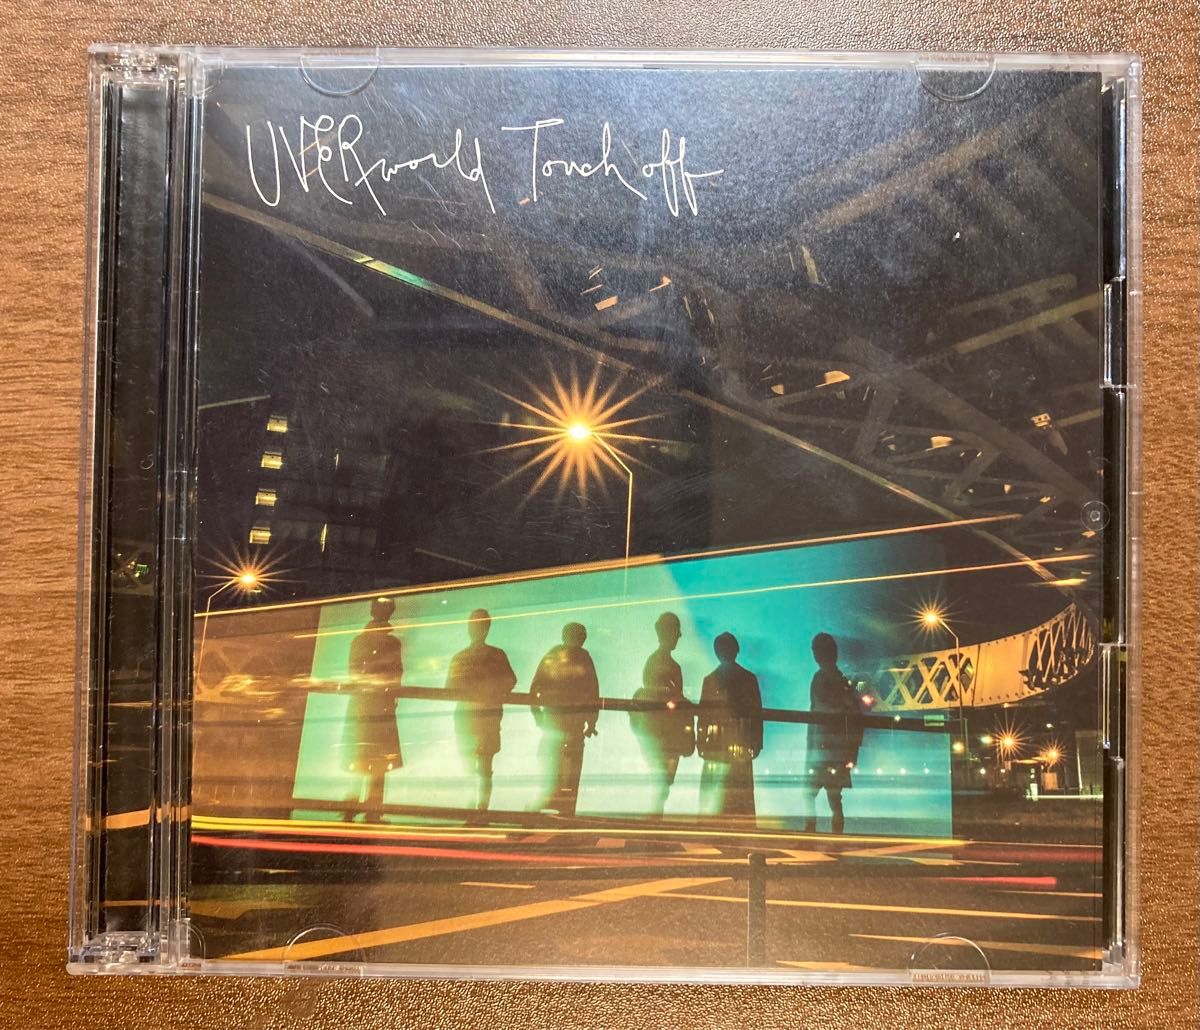 【初回生産限定盤】 UVER「Touch off 」(CD+ライブ音源CD付き)